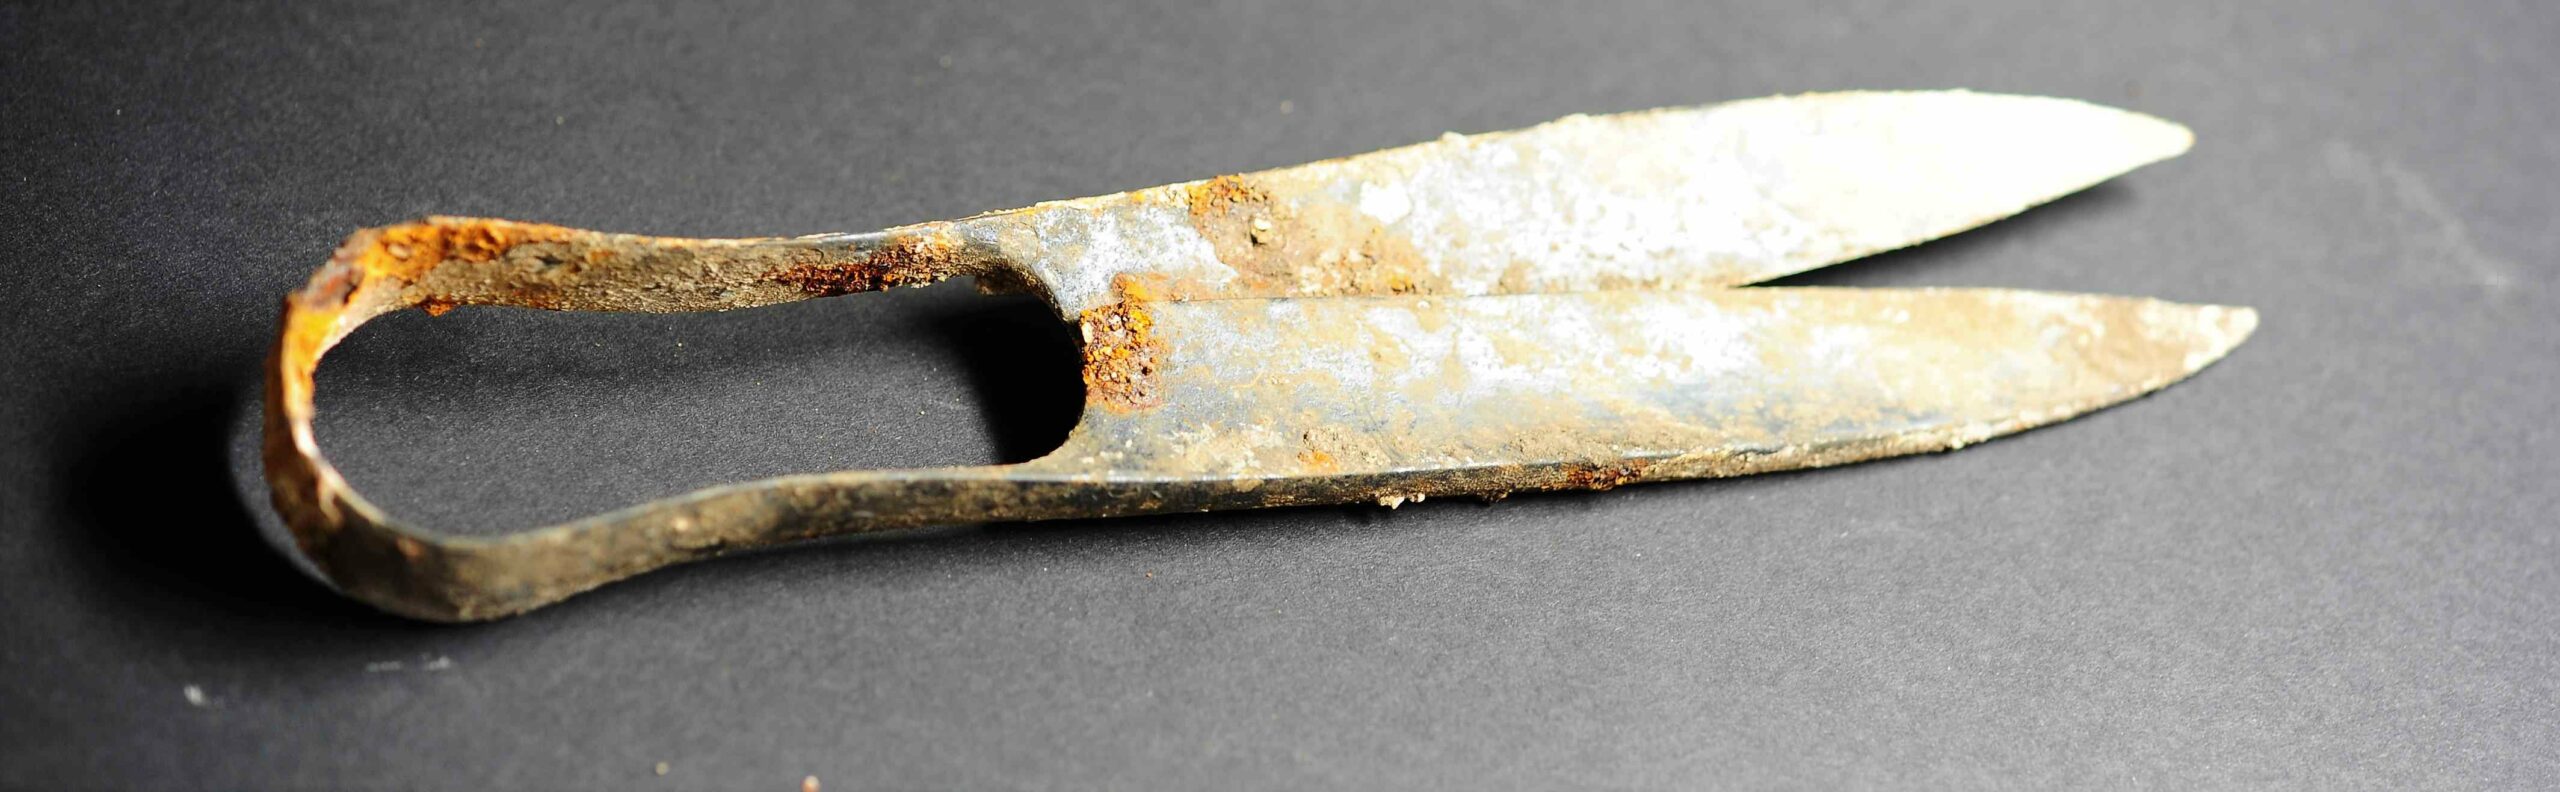 Škare stare 2,300 godina i 'presavijeni' mač otkriveni u keltskoj grobnici za kremiranje u Njemačkoj 2